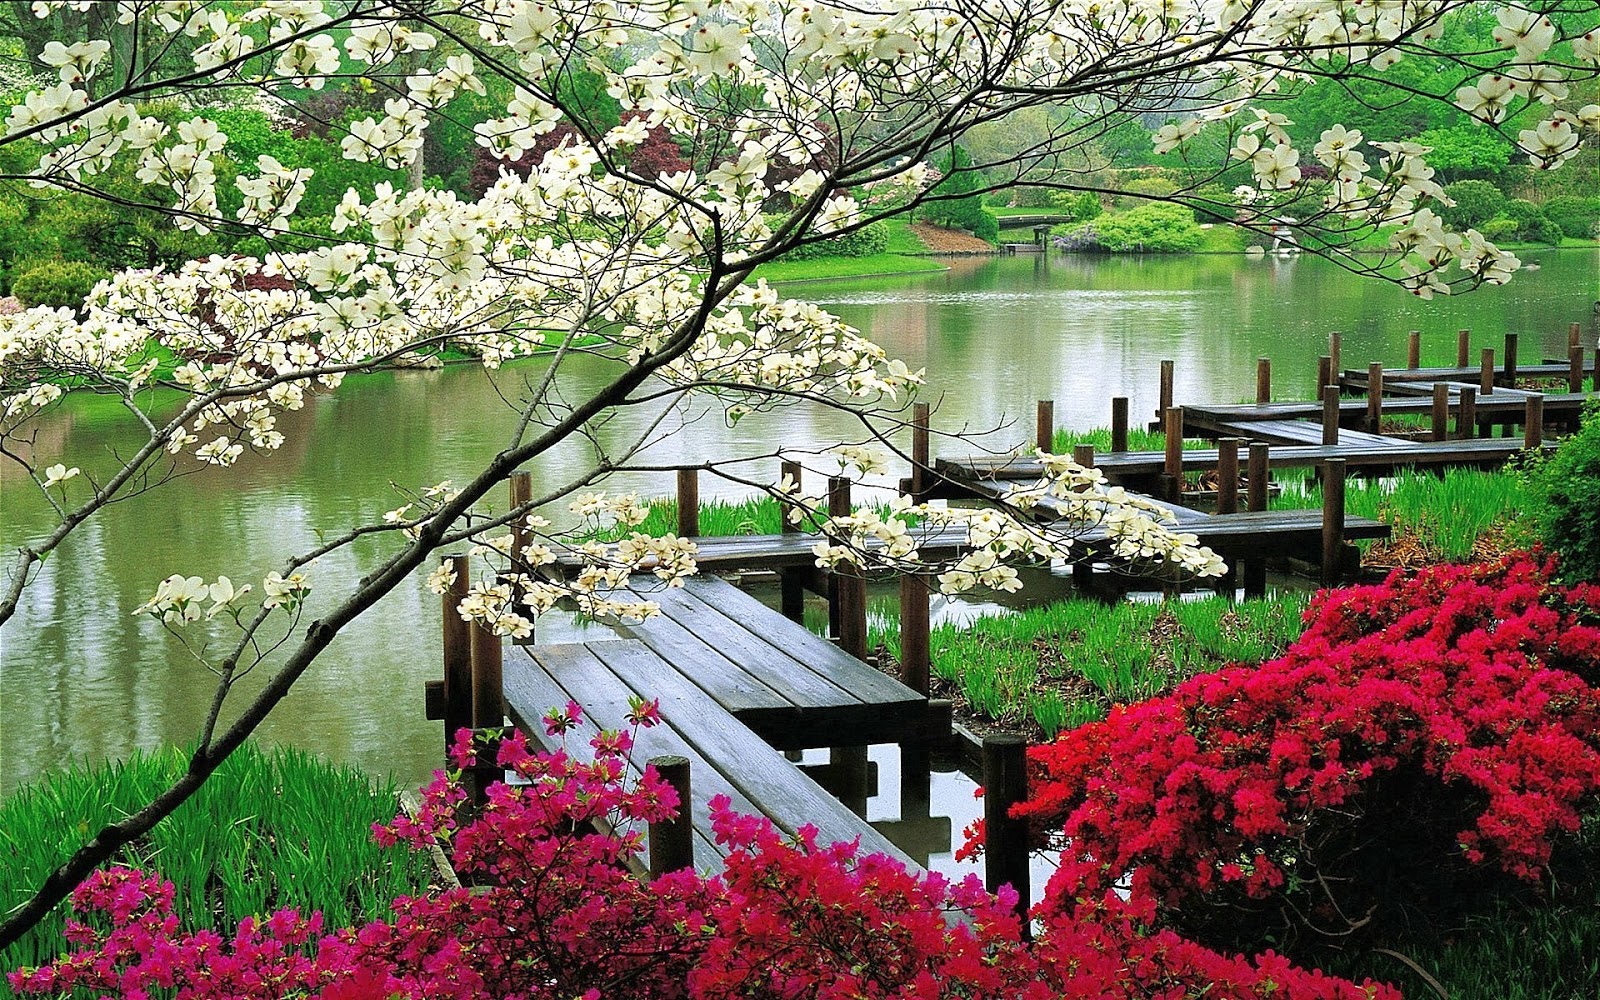 imagenes de flores japonesas - Imagenes de flores japonesas en tela Imagenes tristes 